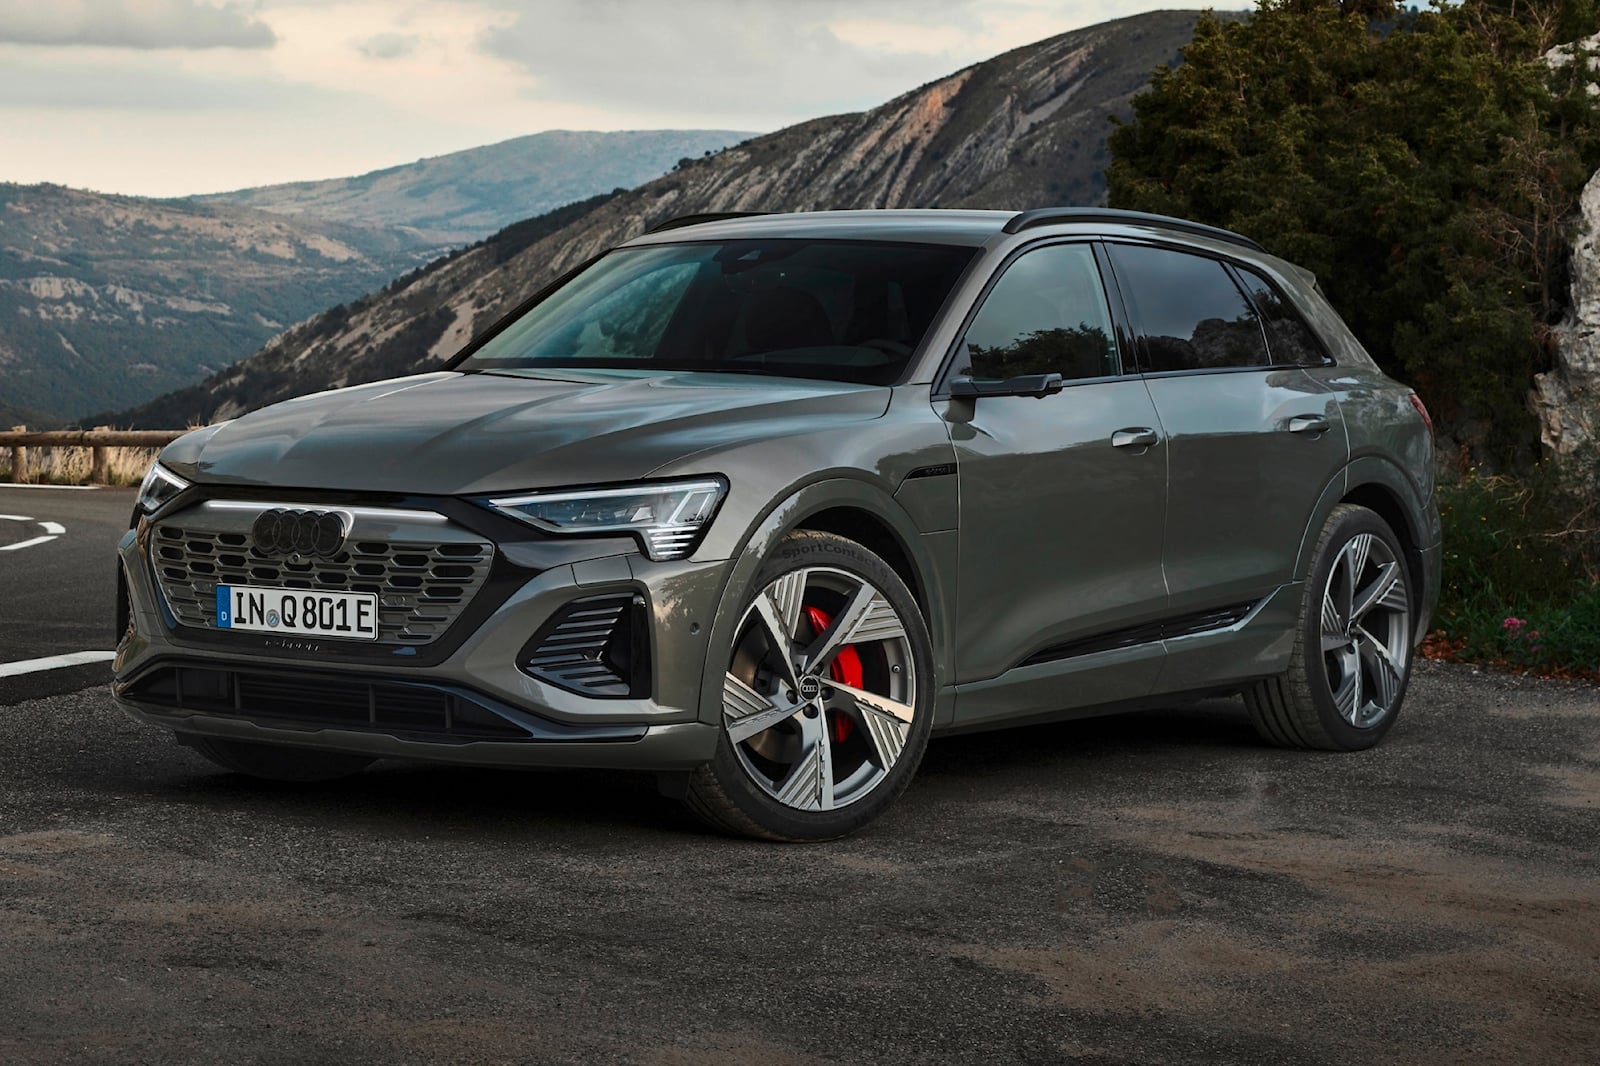 Генеральный директор Audi объявил, что к 2025 году бренд представит 20 новых или обновленных моделей, 50% из которых будут электромобилями.